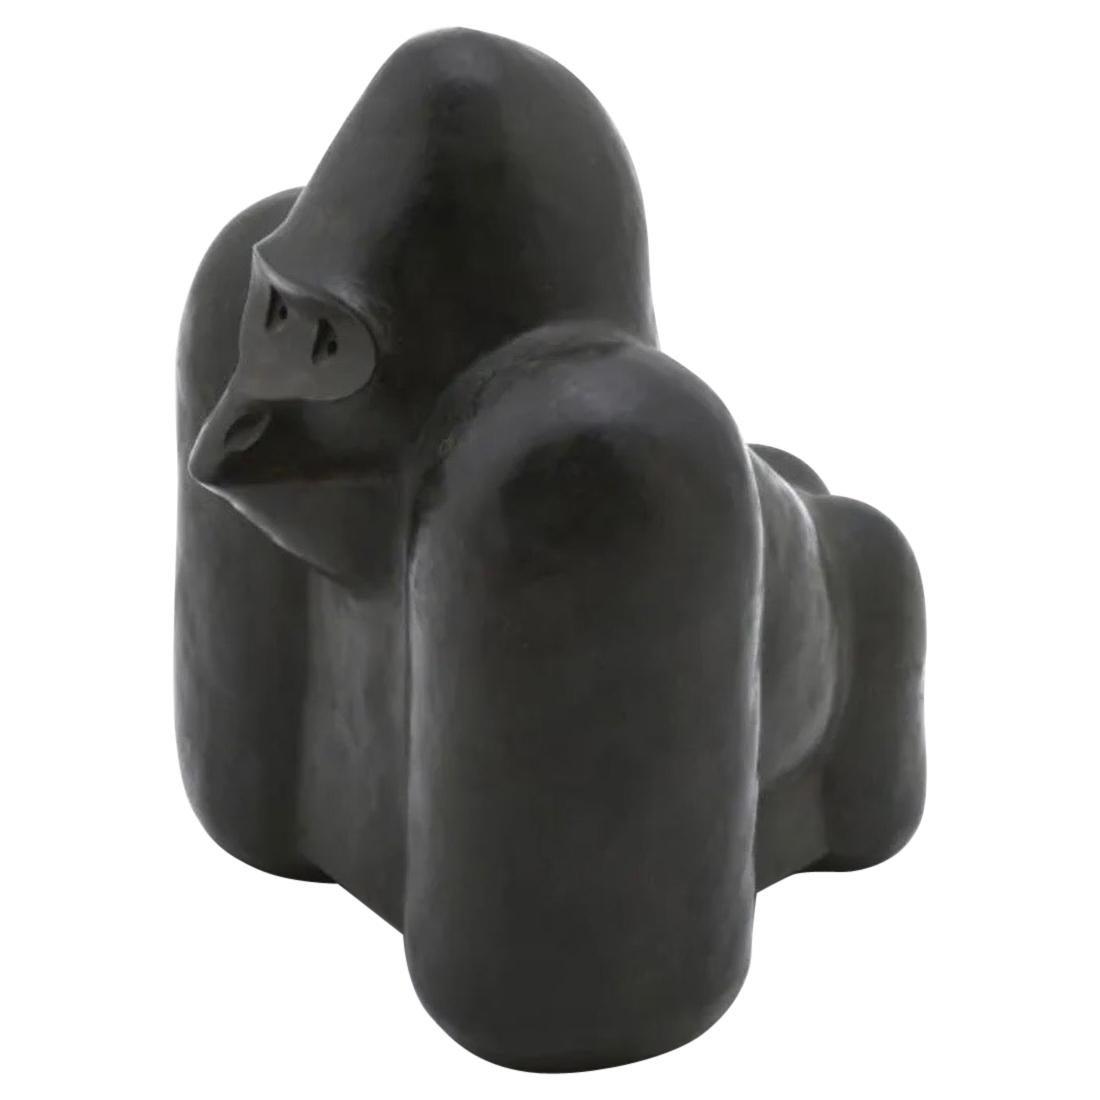 Sculpture de singe stylisé en pierre noire